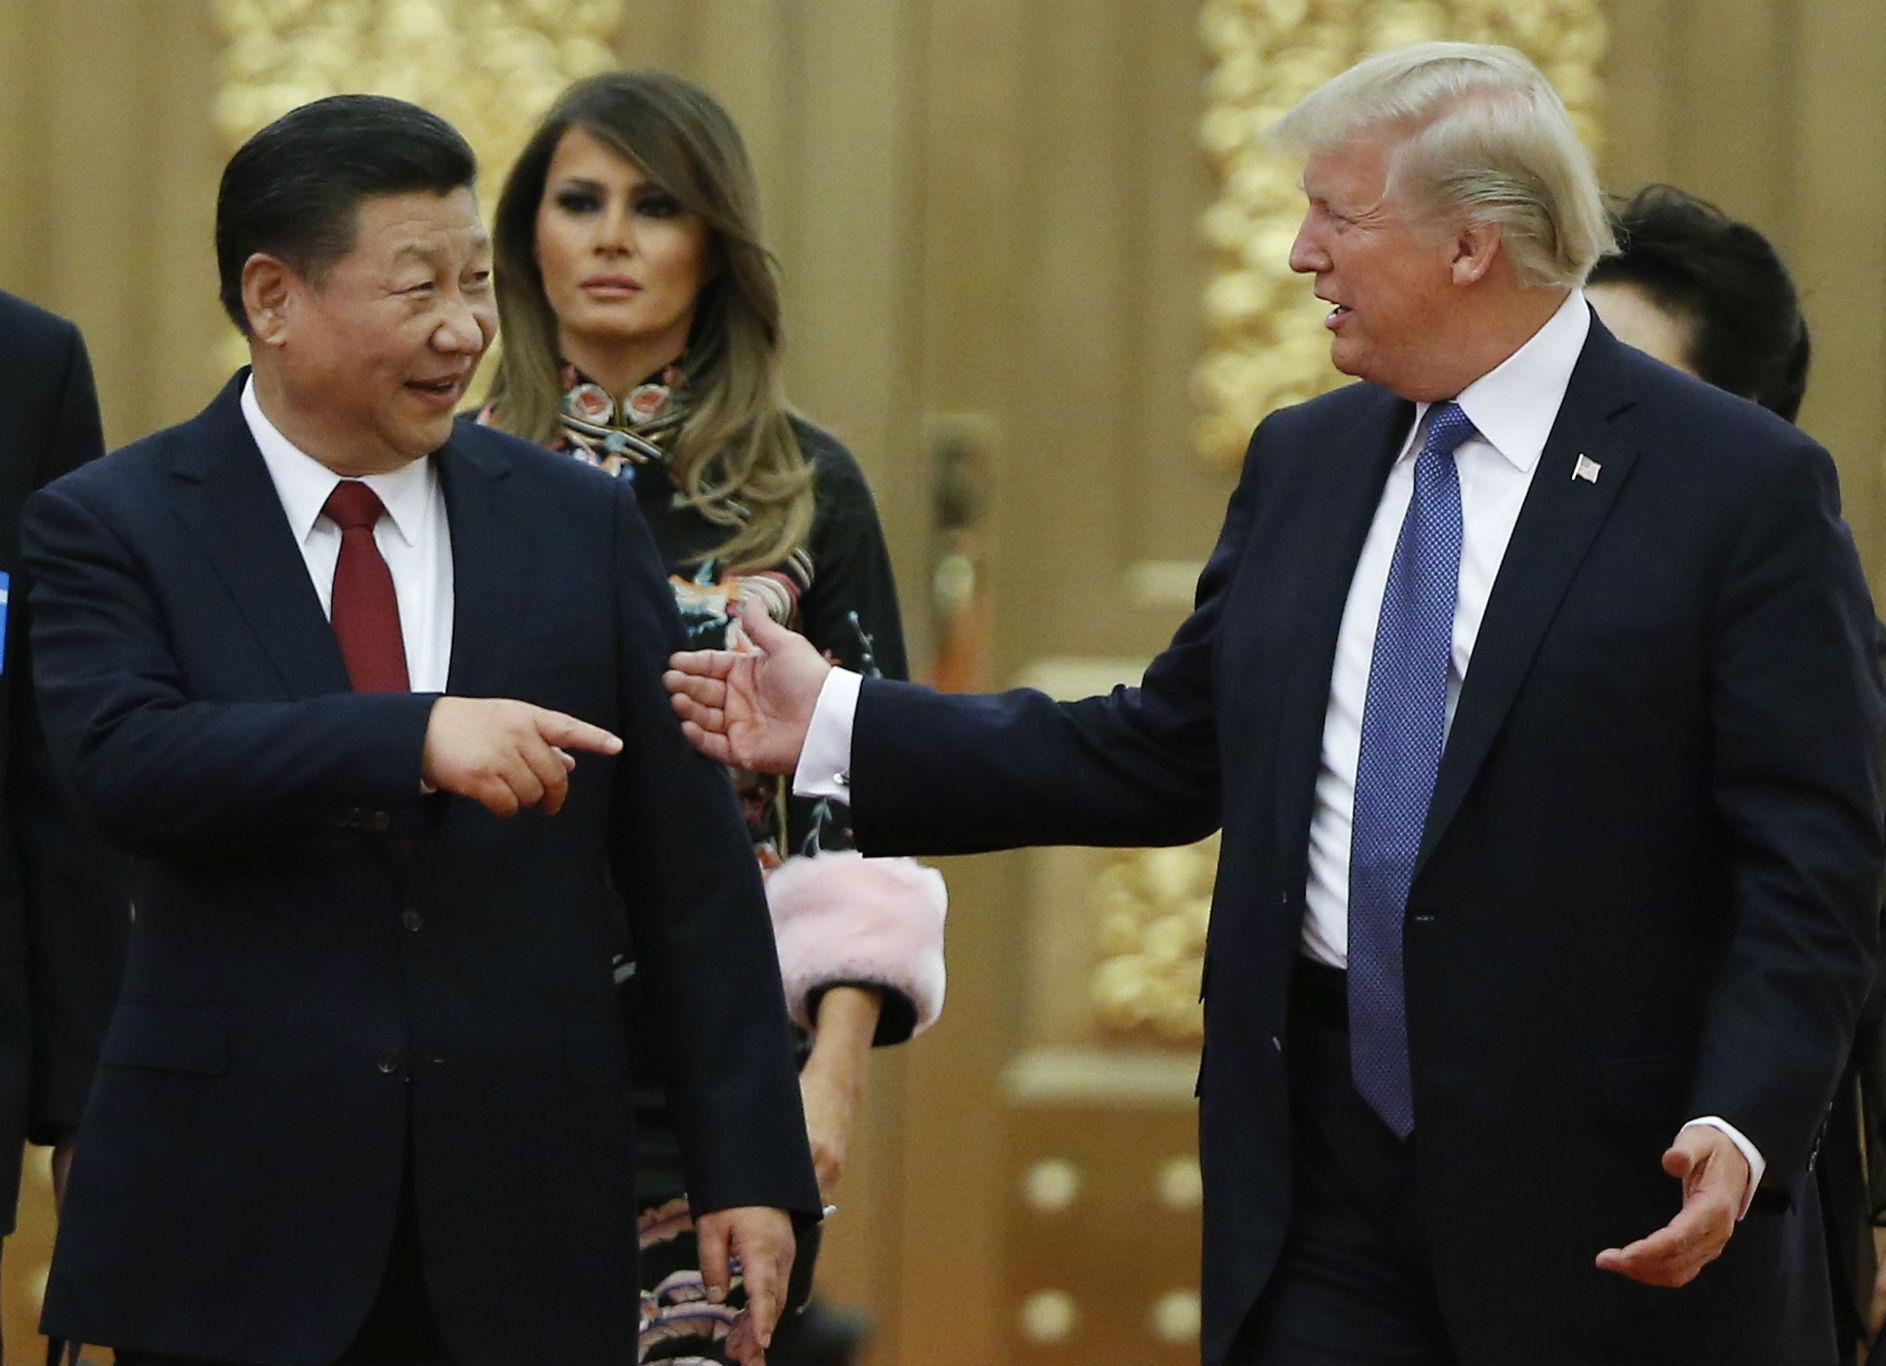 احتمال کودتا در چین توسط آمریکا